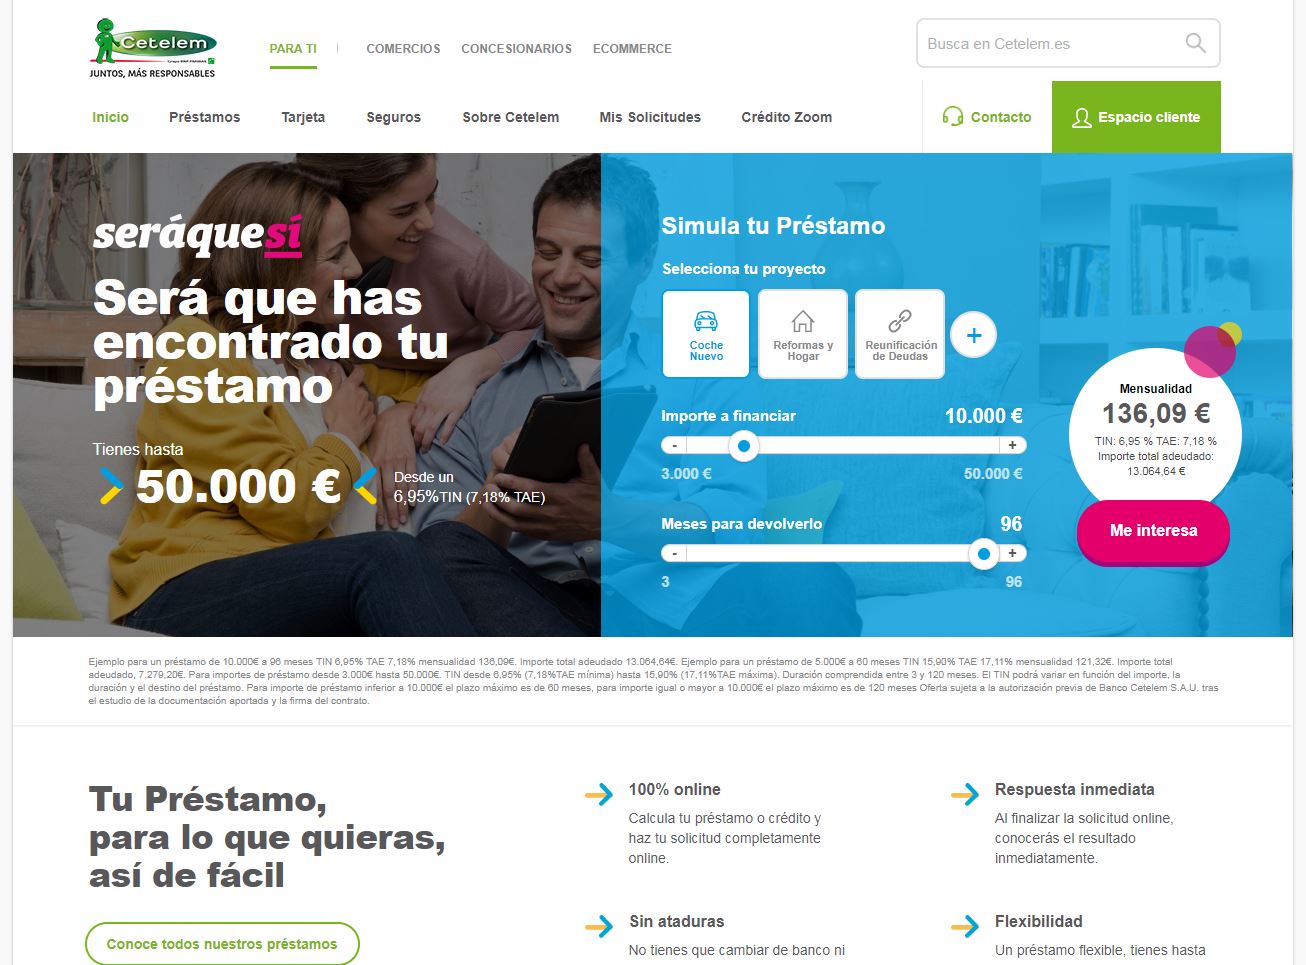 Cetelem estrena su nueva página web: Cetelem.es